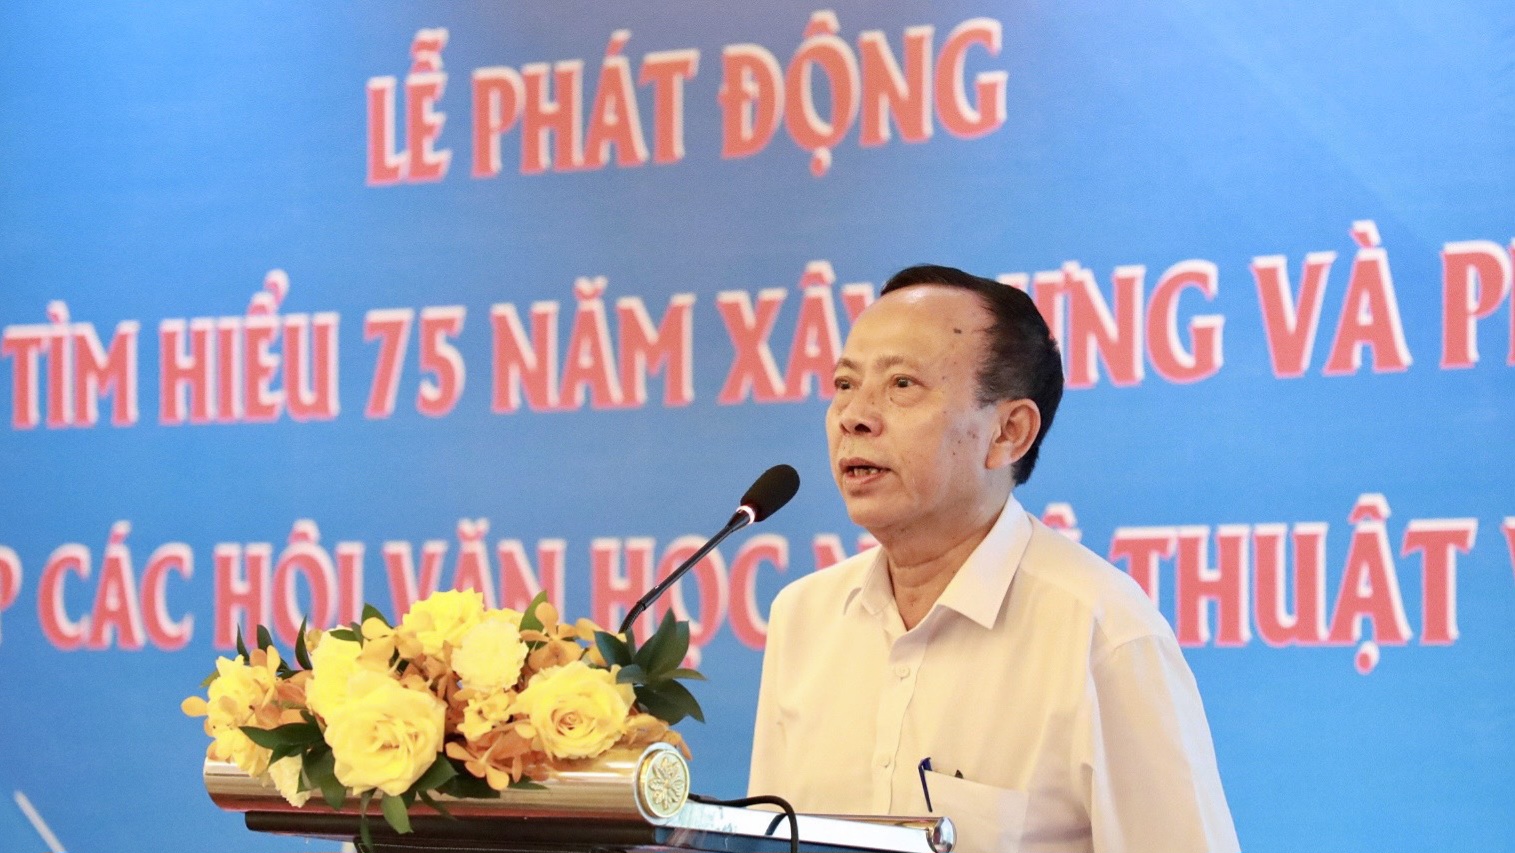 Phát động Cuộc thi Tìm hiểu 75 năm xây dựng và phát triển Liên hiệp các Hội Văn học nghệ thuật Việt Nam - 5